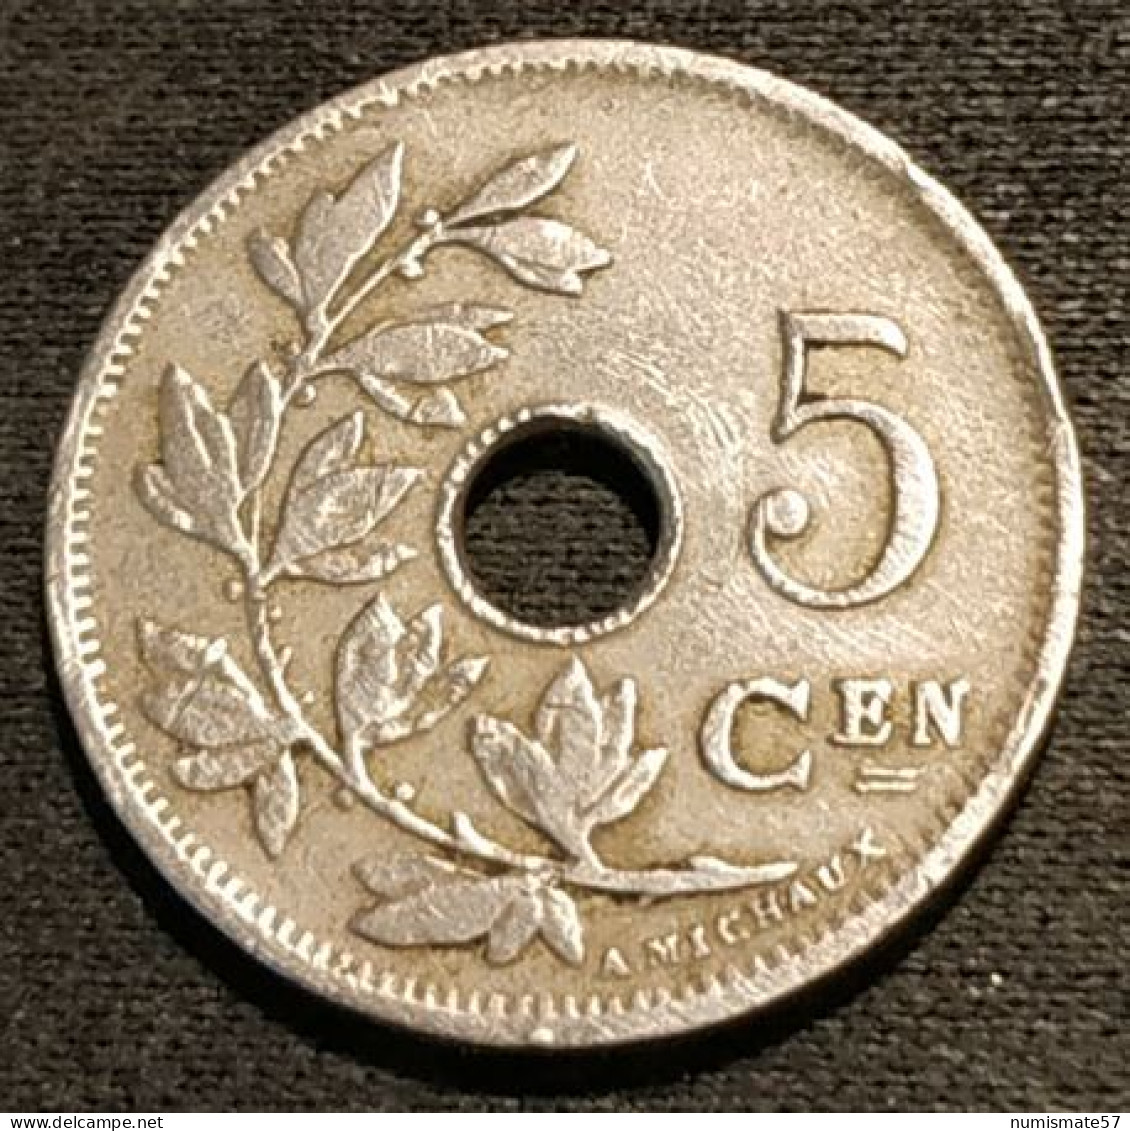 BELGIQUE - BELGIUM - 5 CENTIMES 1902 - Légende NL - Petite Date - Léopold II - Type Michaux - KM 47 - 5 Cent